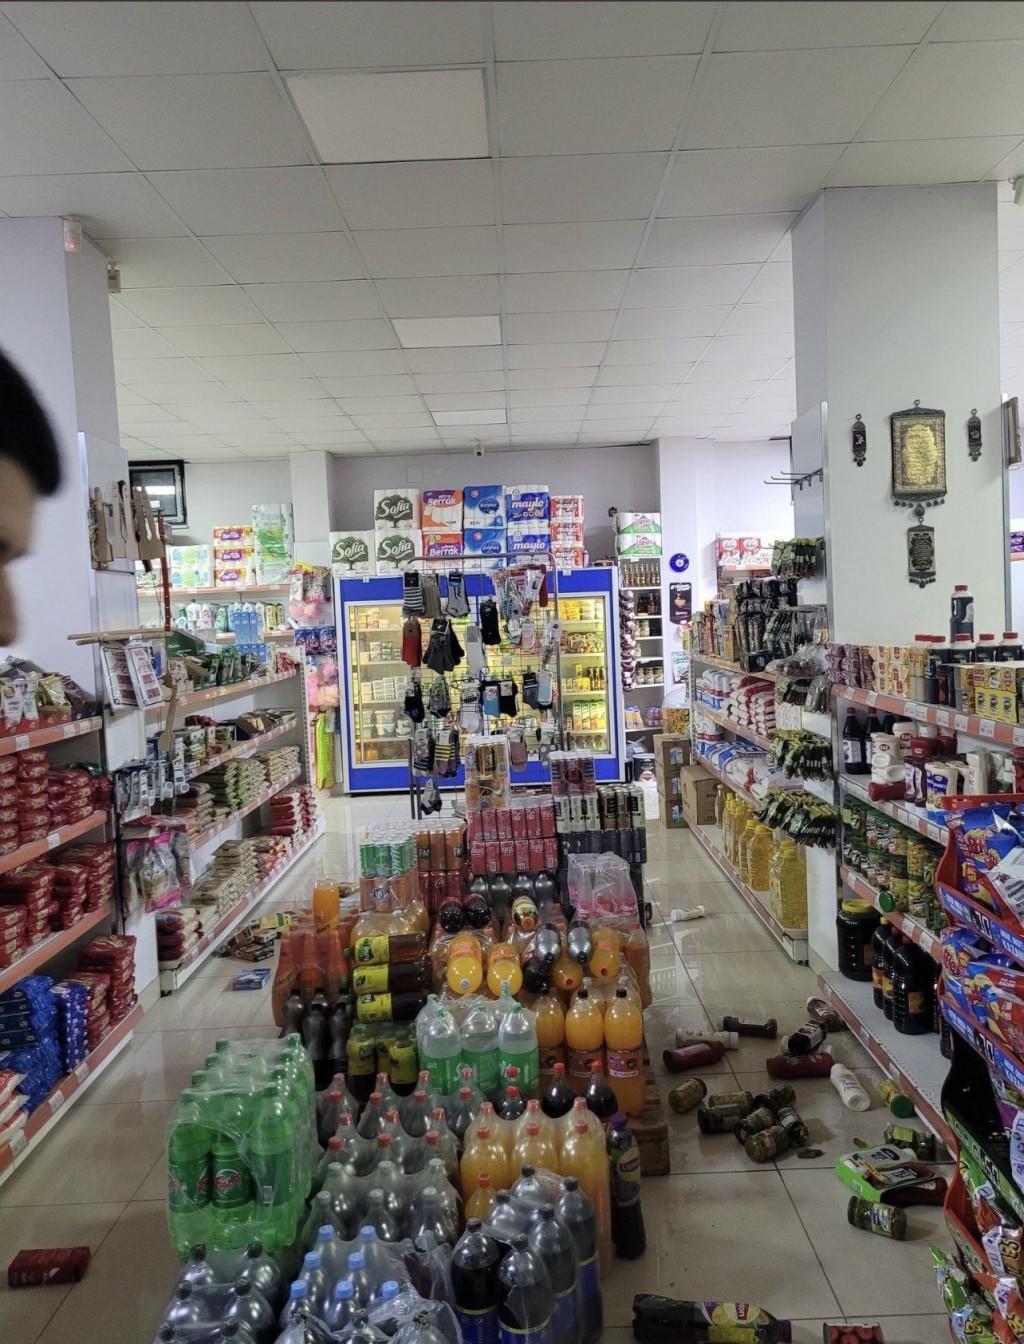 当地居民发布照片显示超市大量货物倒地。